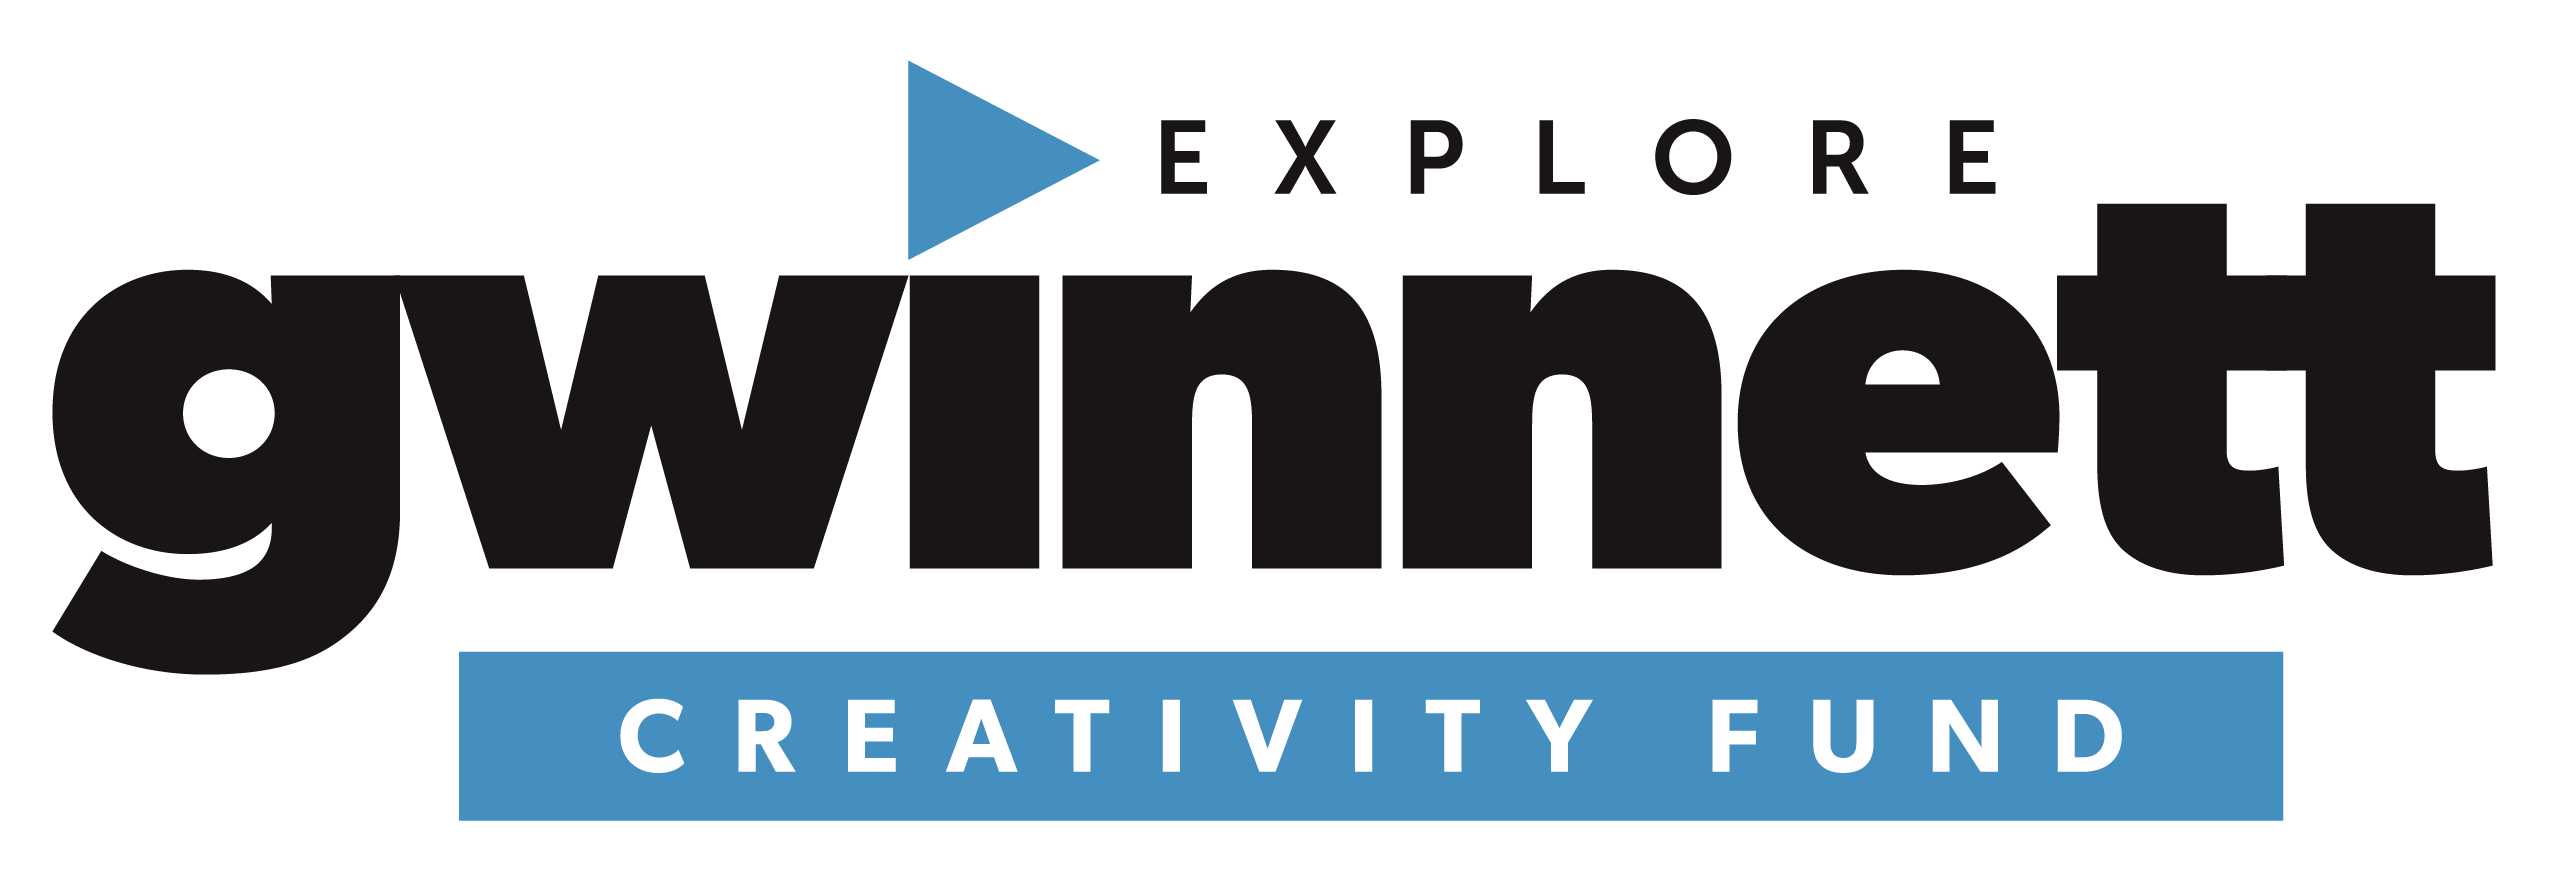 Explore Gwinnett logo